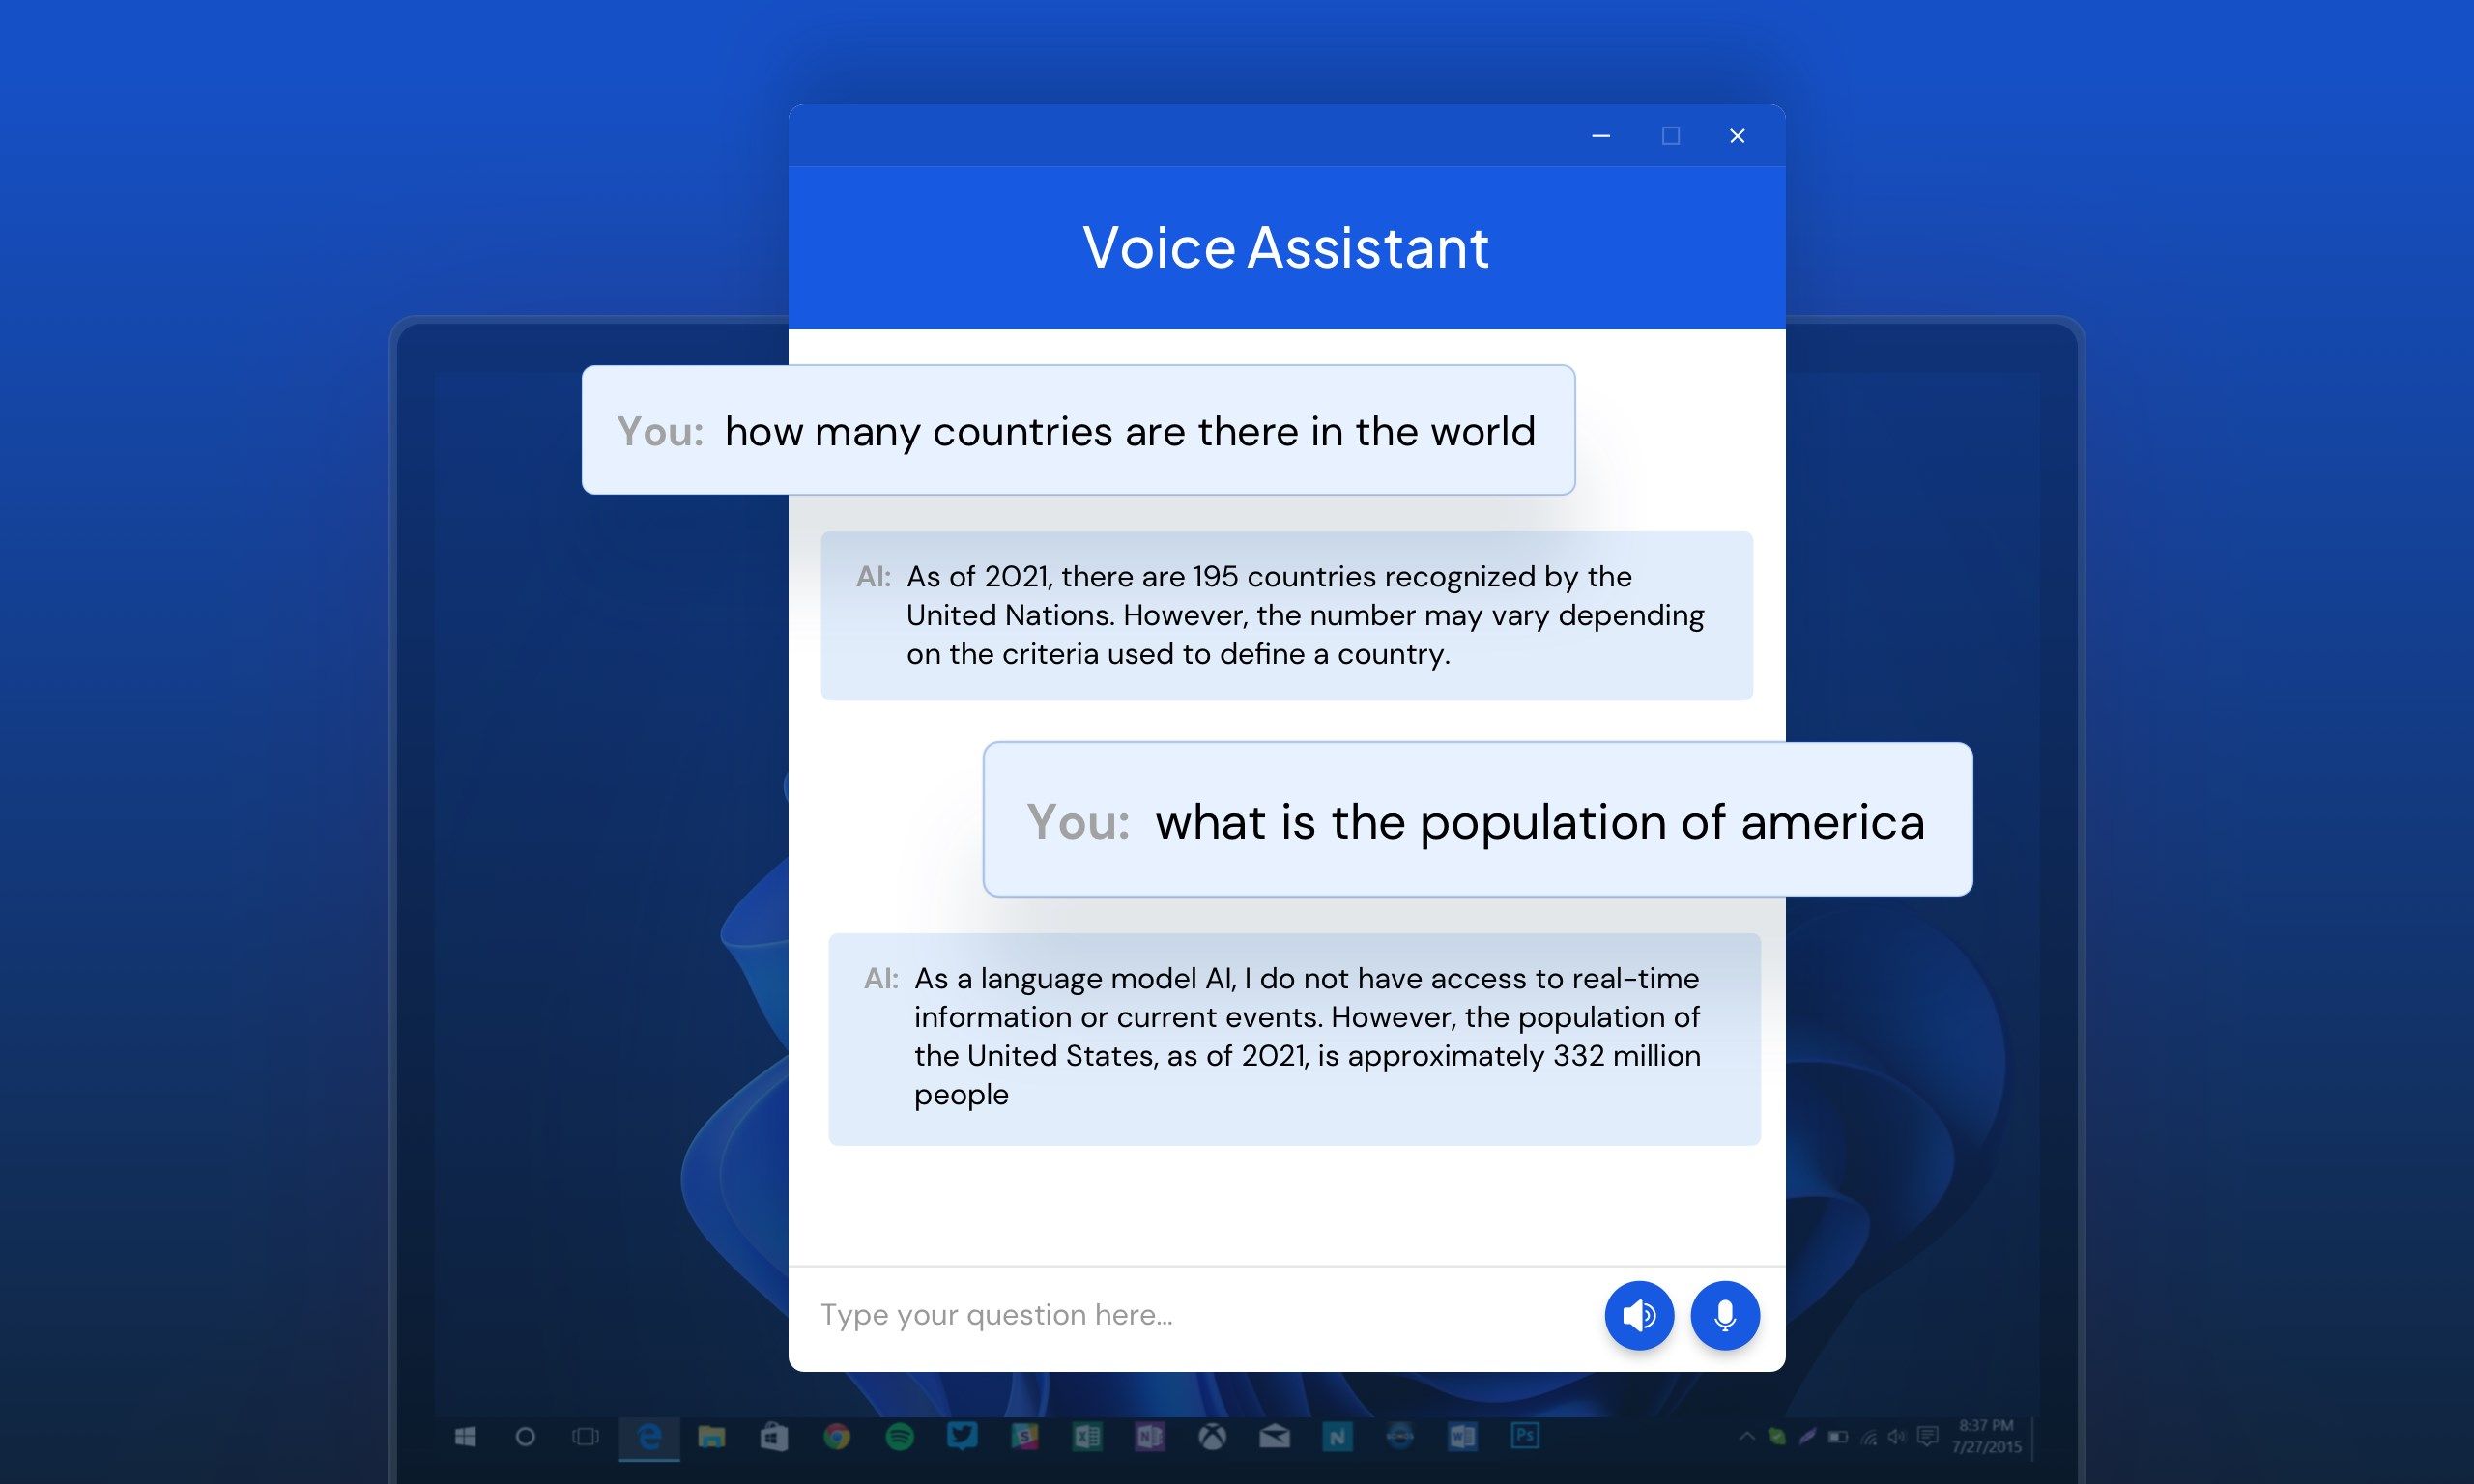 AI Voice Assistant